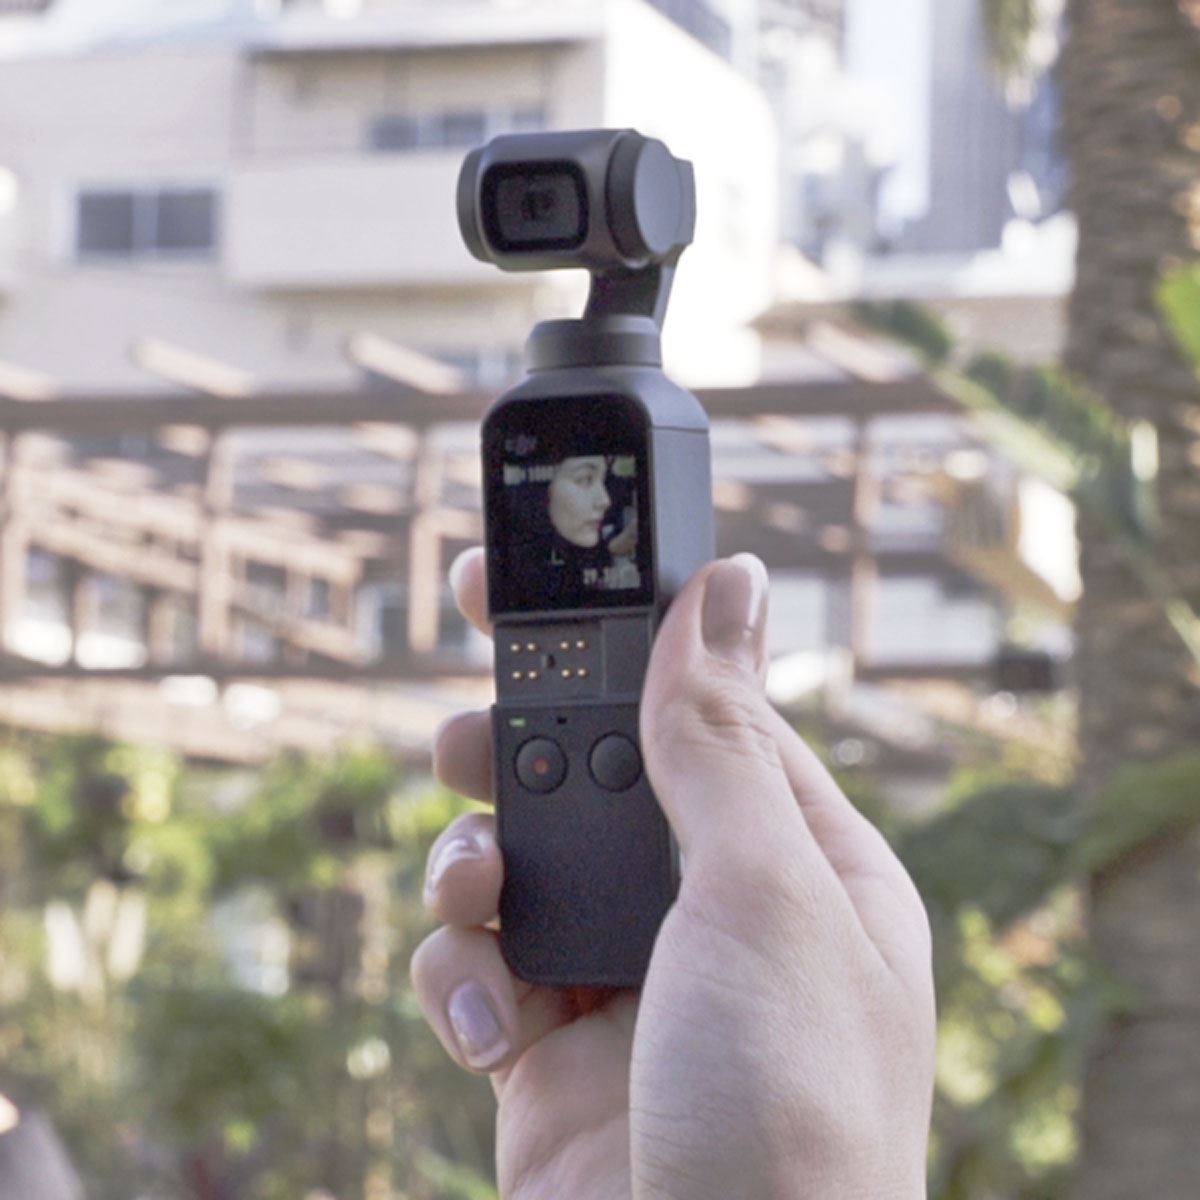 超絶コンパクトな4K対応ジンバル一体型カメラ「Osmo Pocket」が